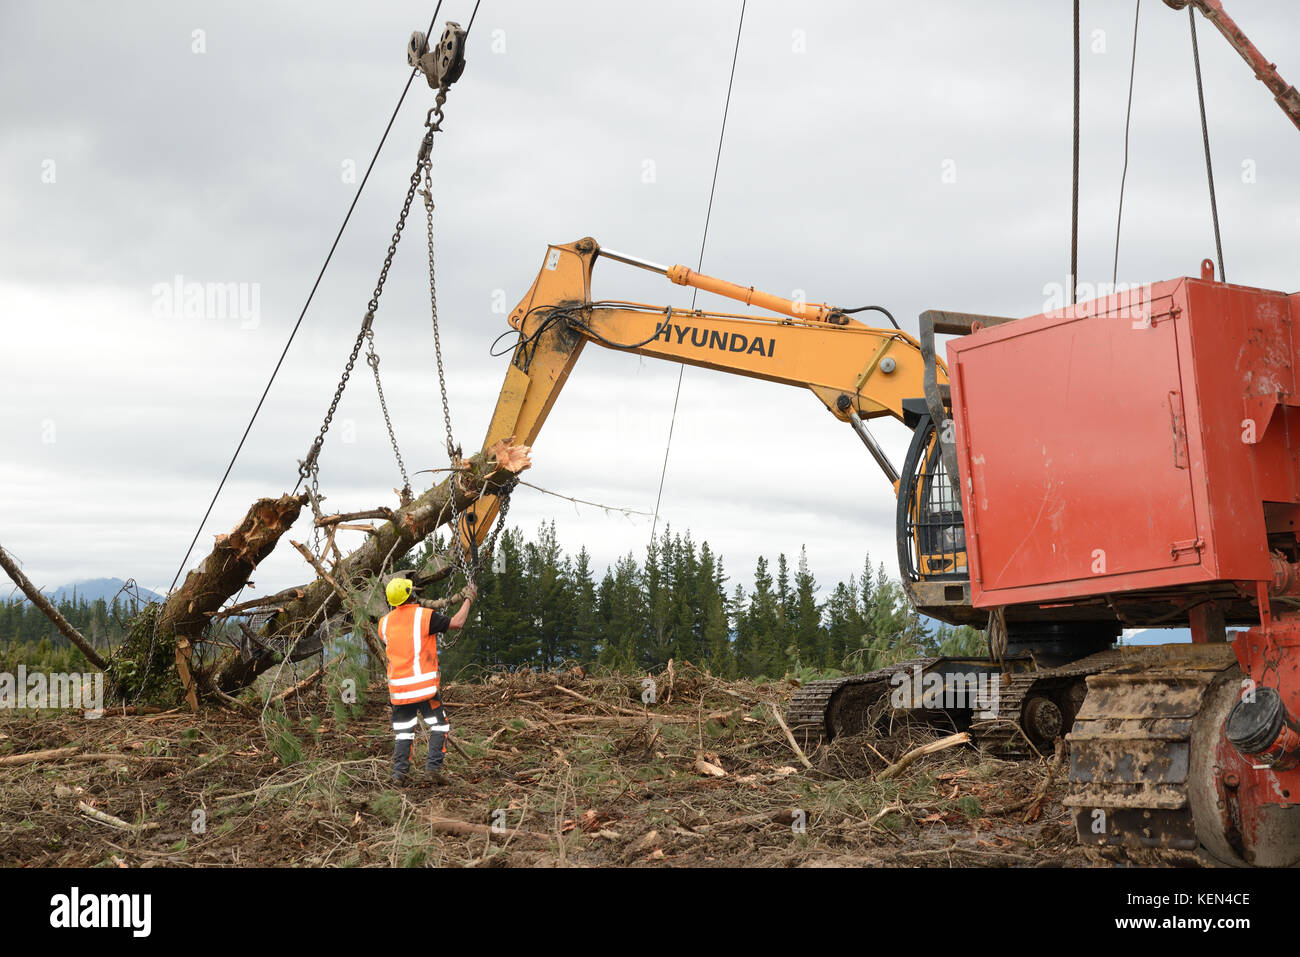 KUMARA, Nuova Zelanda, Settembre 20, 2017: un lavoratore forestale rimuove la catena da un registro ad un sito di registrazione nei pressi di Kumara, West Coast, Nuova Zelanda Foto Stock